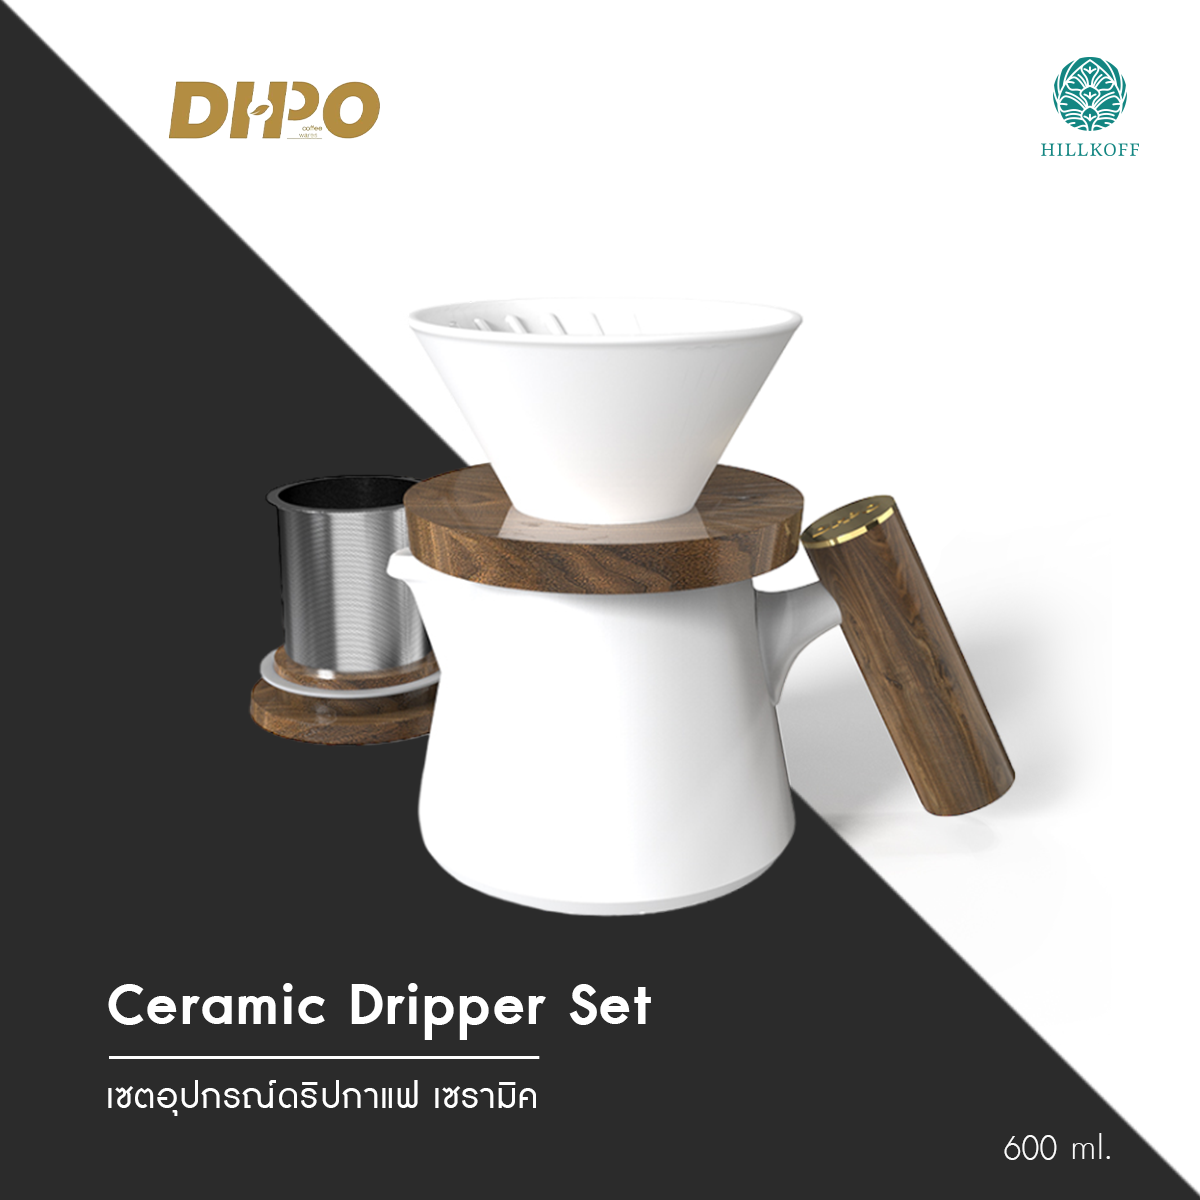 Hillkoff : Ceramic Dripper Set 600ml V60